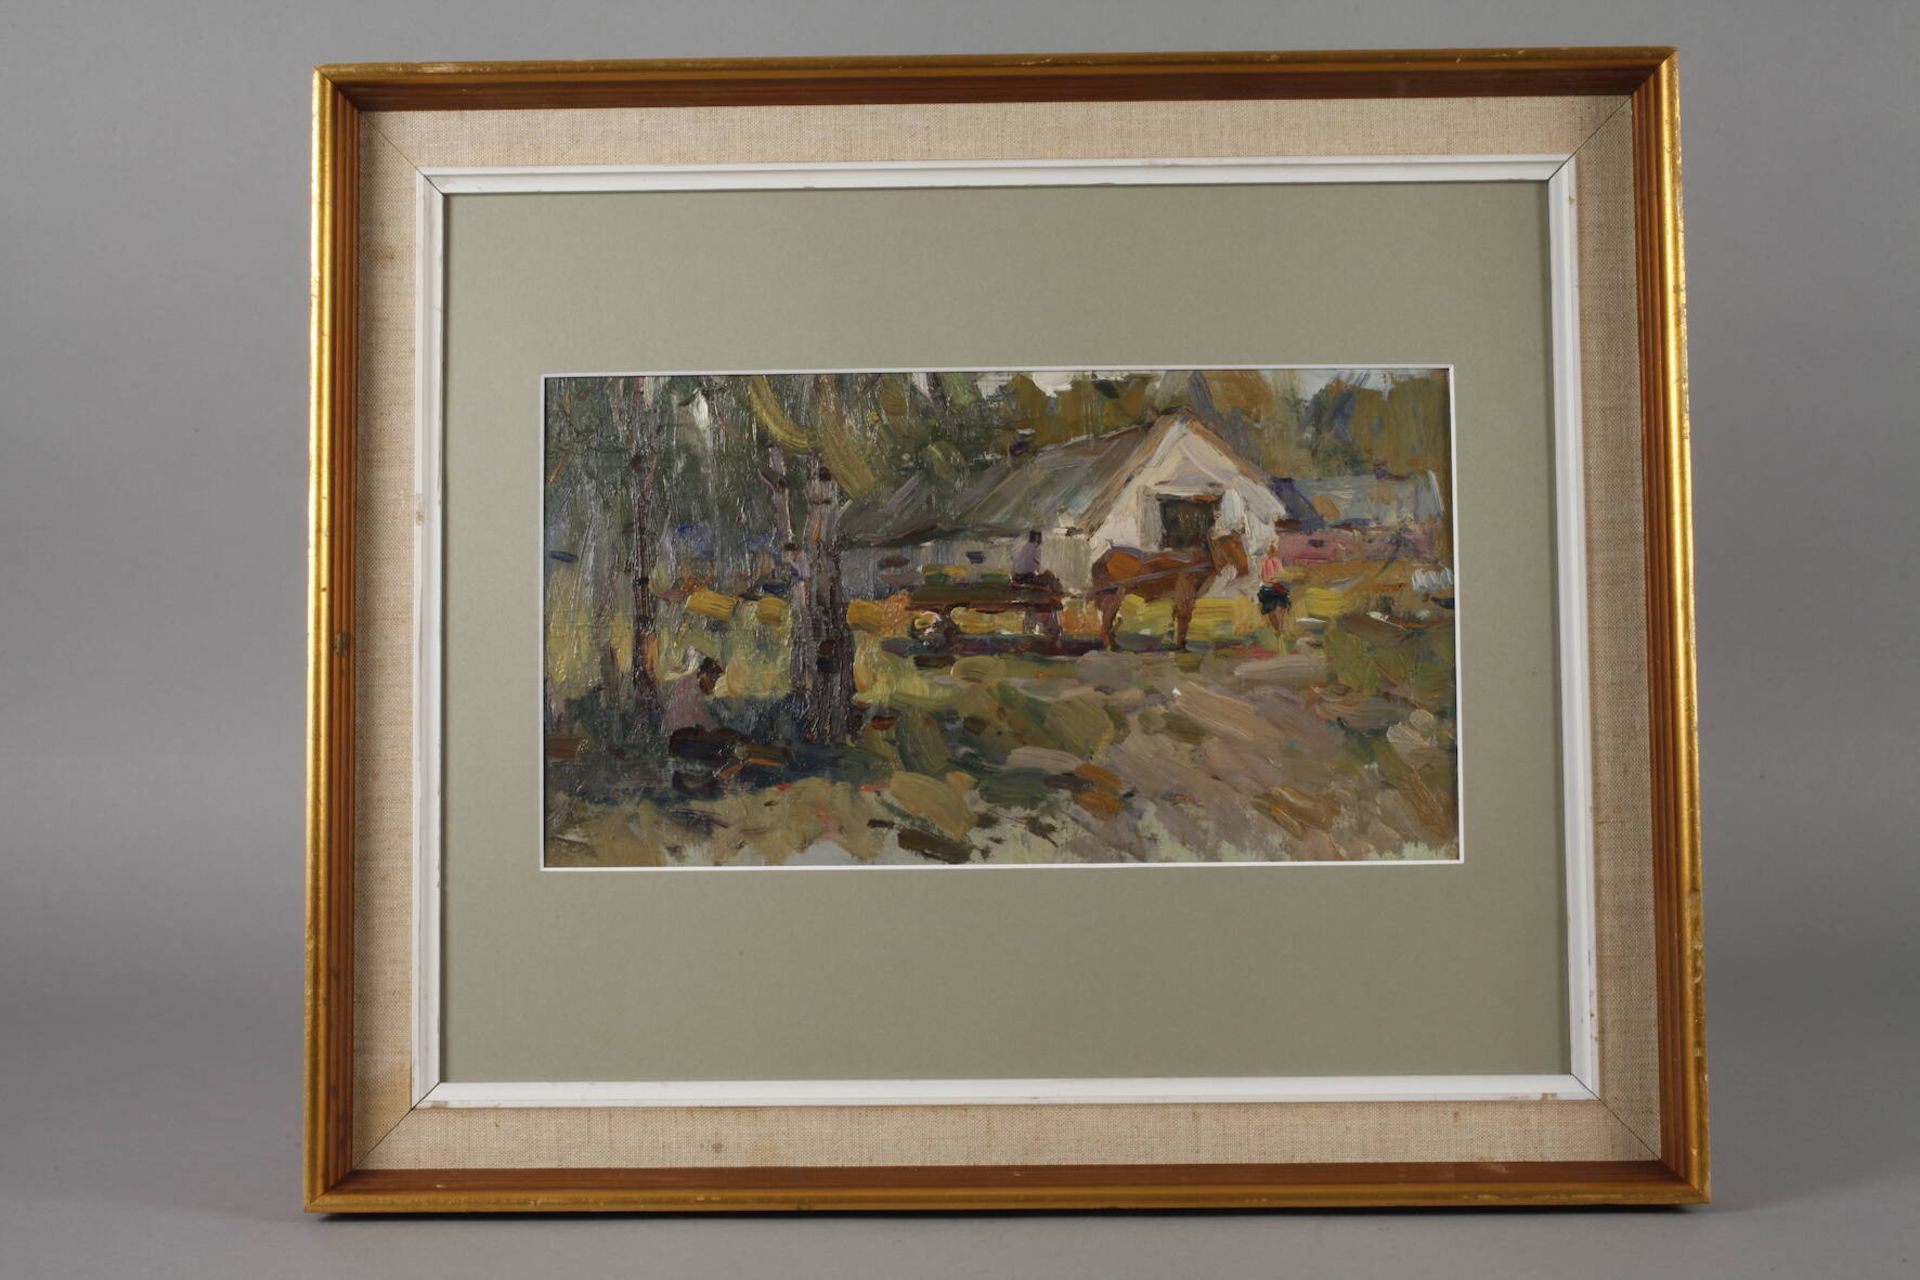 Pferdekarren vorm Dorf lichte ländliche Sommerlandschaft, flott pastos erfasste Malerei mit - Bild 2 aus 3